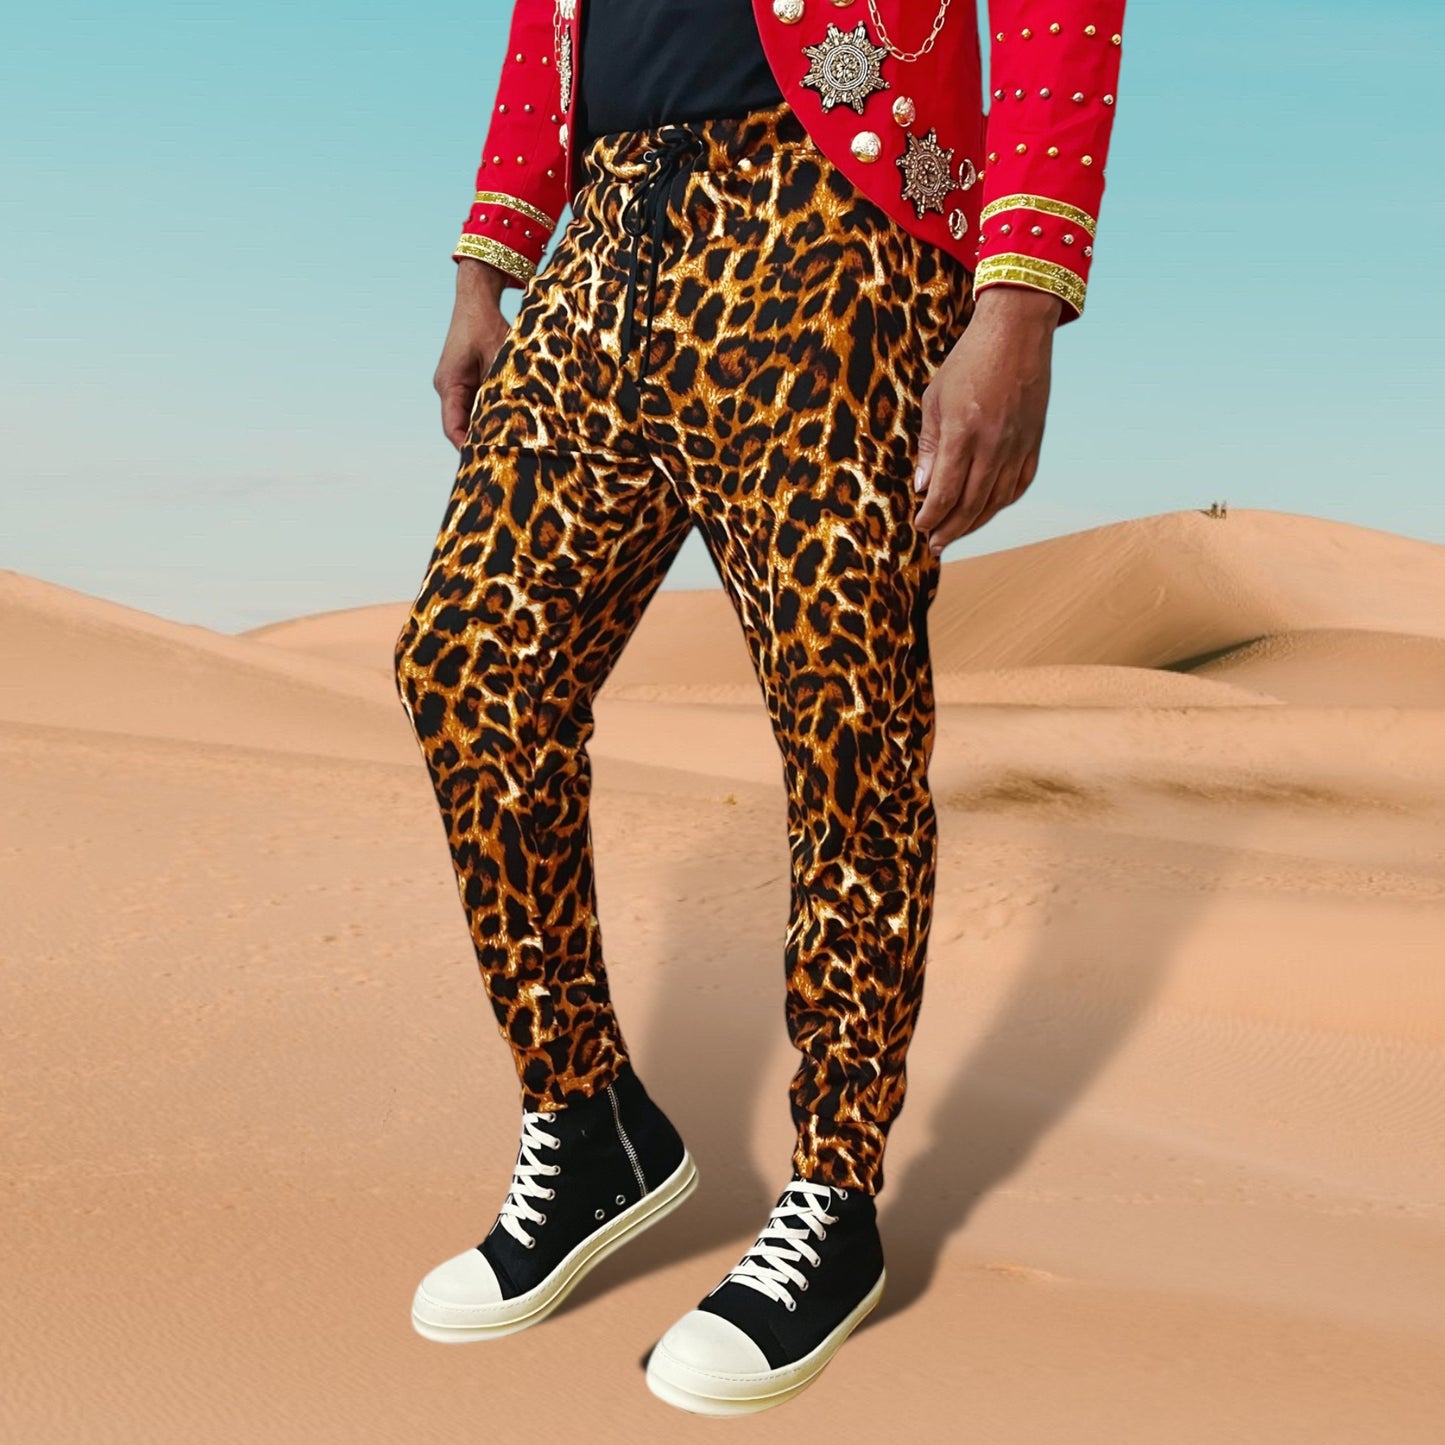 Slim Cut Jogger Pants | Cheetah Printed Pants | Elastic Waist and Side Pockets